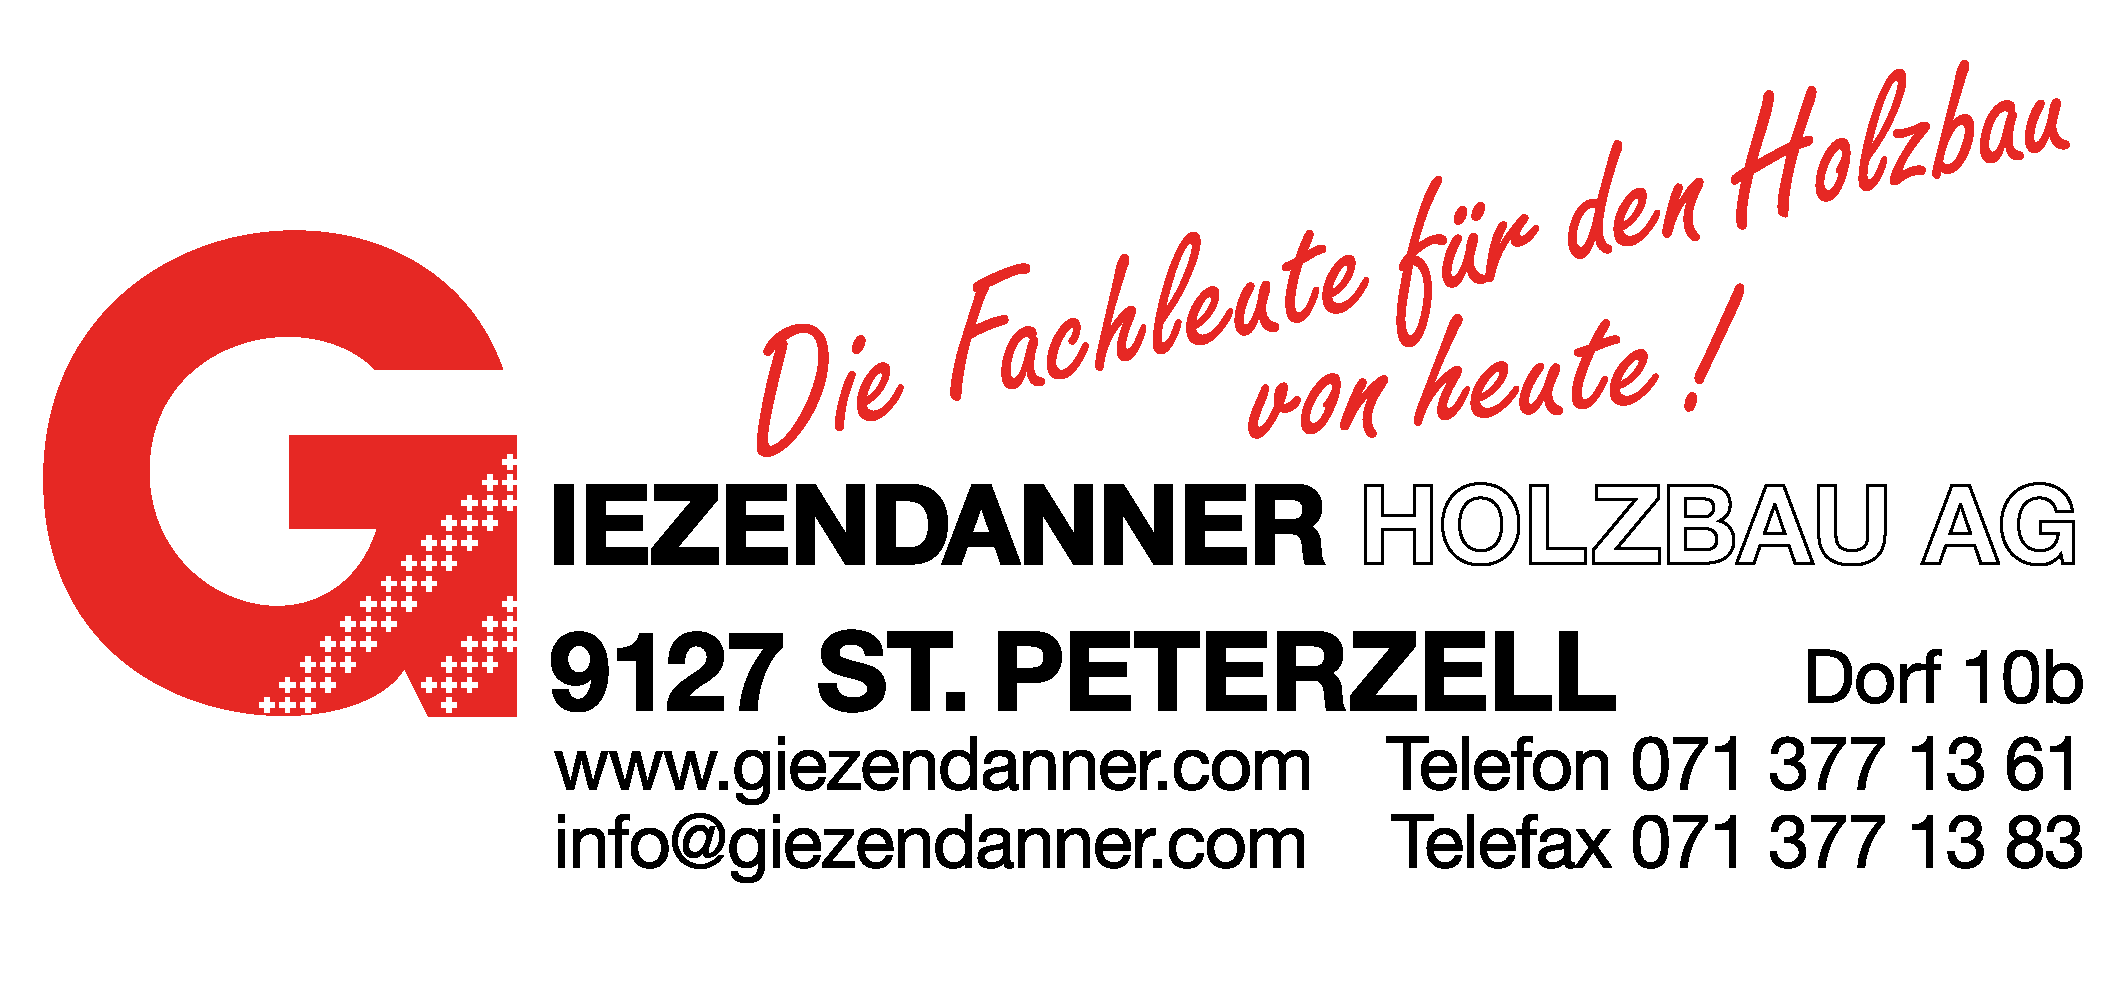 (c) Giezendanner.com